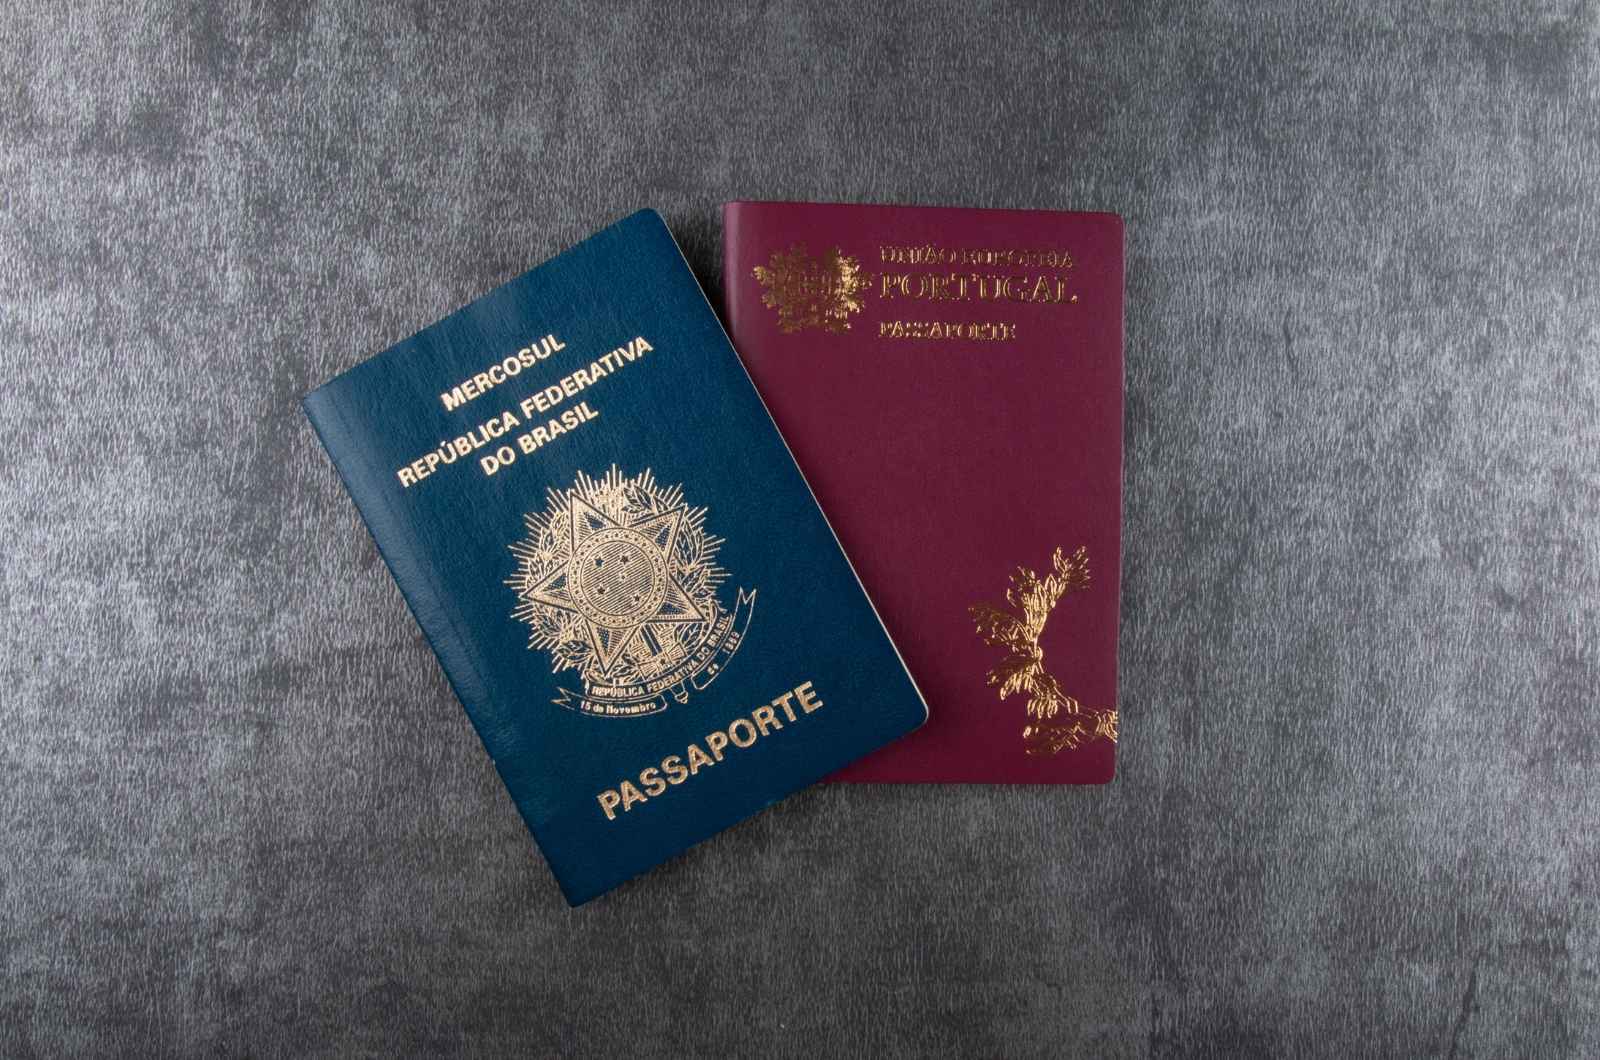 יחסי פורטוגל וישראל – כיצד זה עוזר לקבל דרכון פורטוגזי?